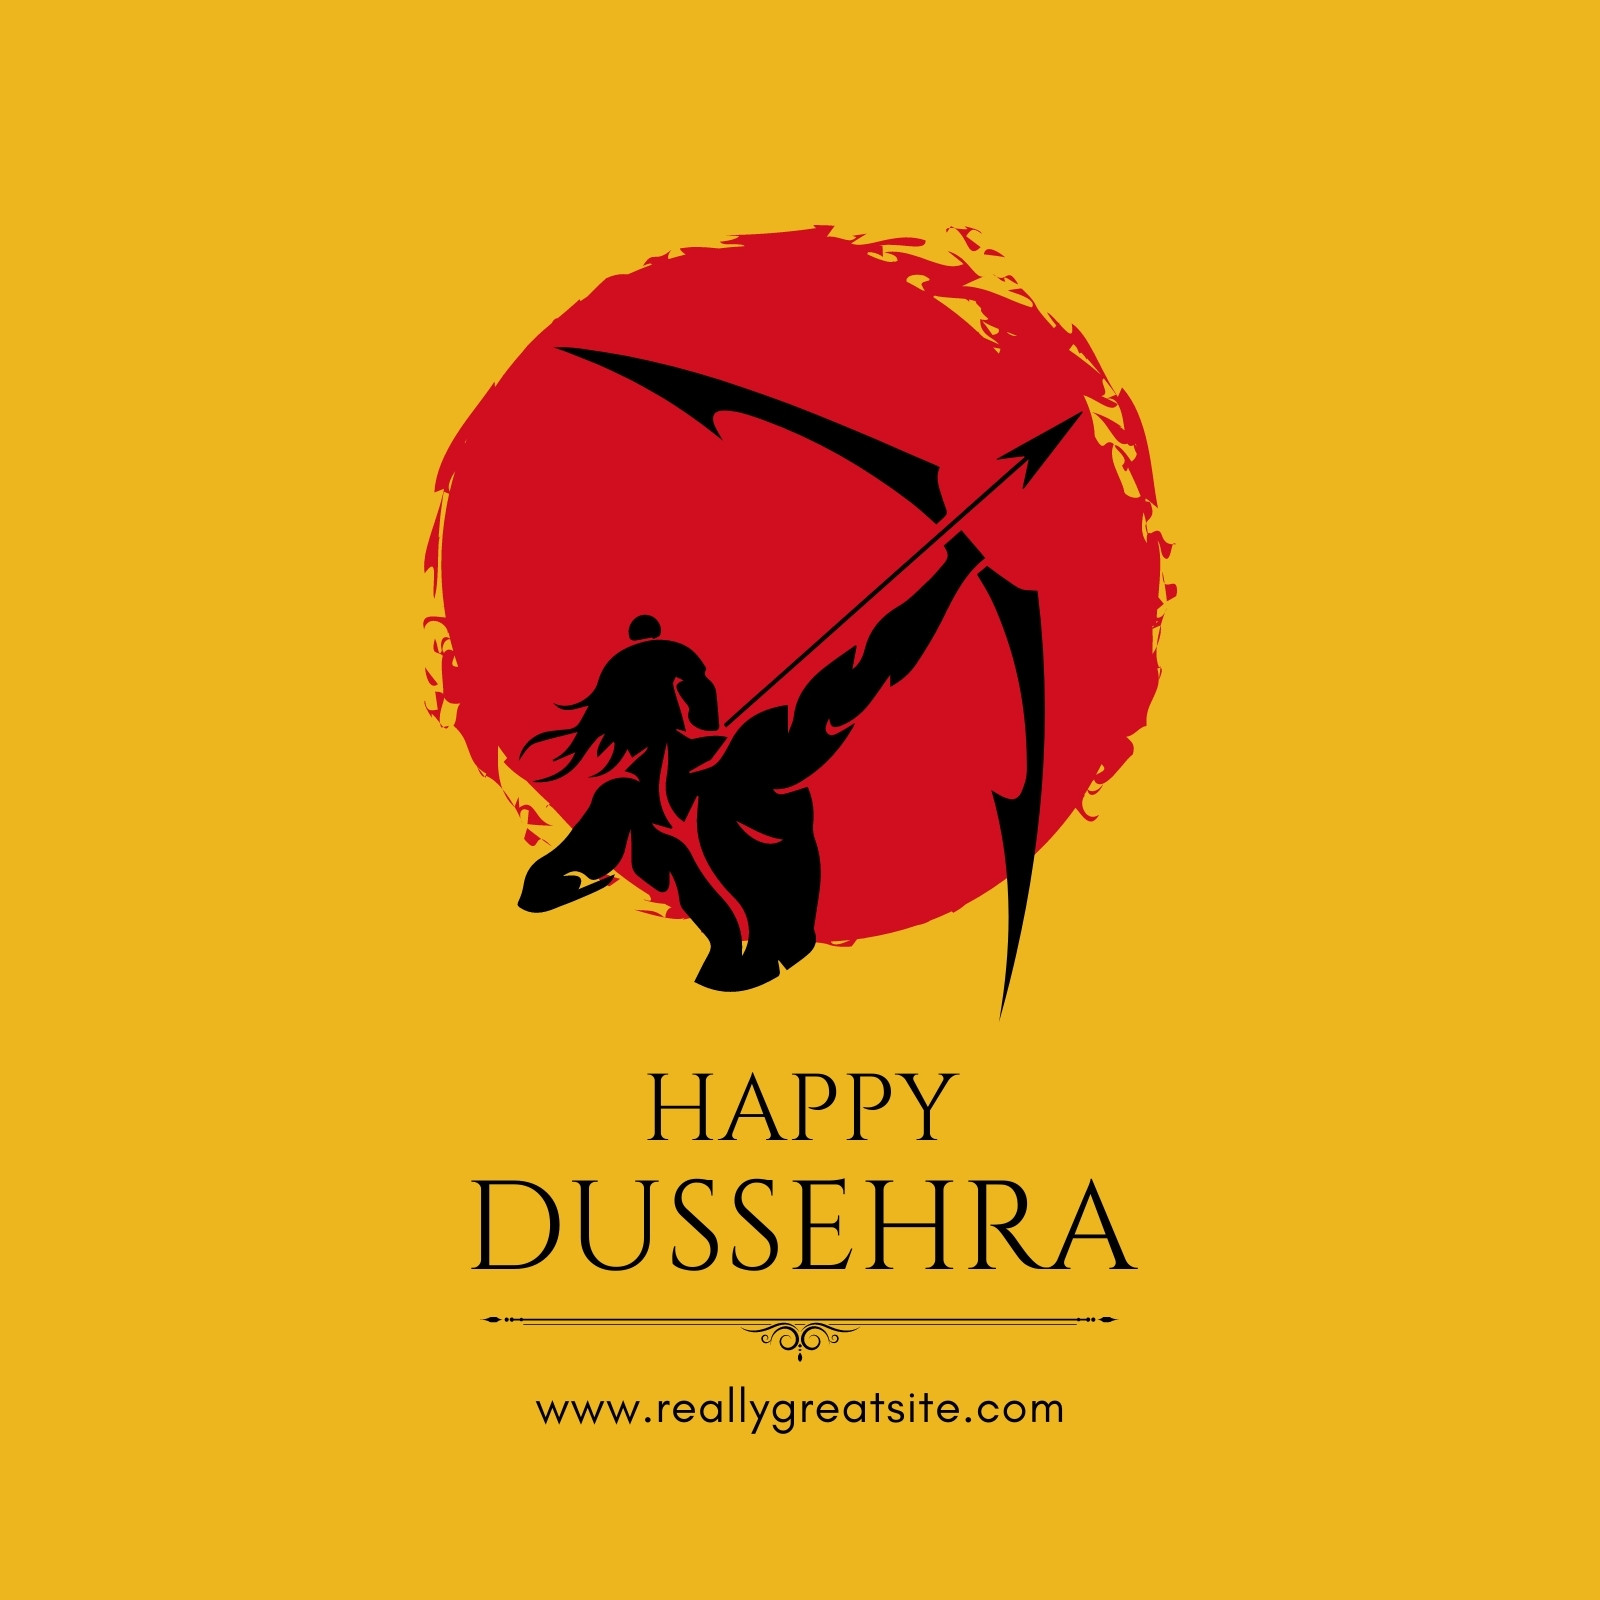 Dussehra Greeting PNG Transparent, Dussehra Greeting, Happy Dussehra,  Dussehra Card PNG Image For Free Download